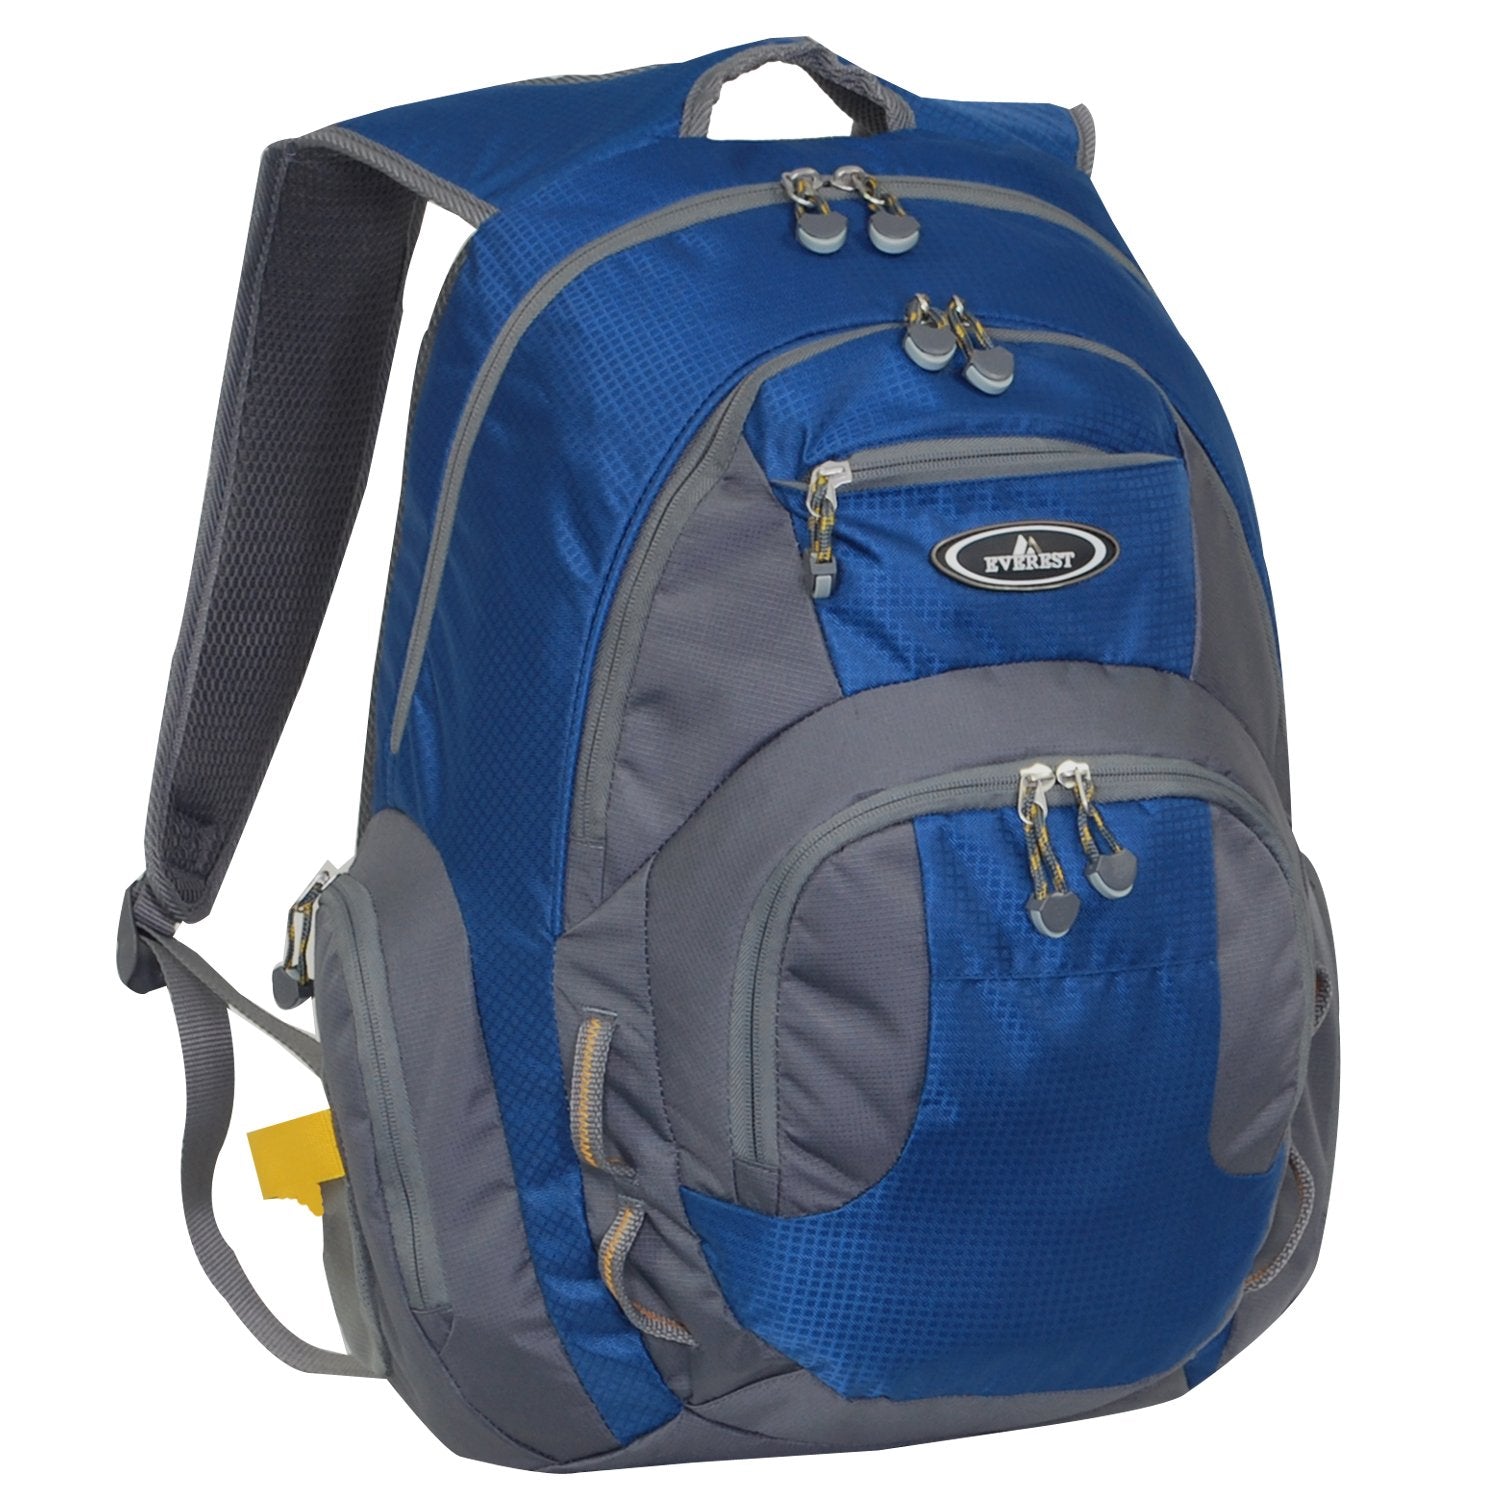 Everest-Deluxe Traveler's Laptop Backpack